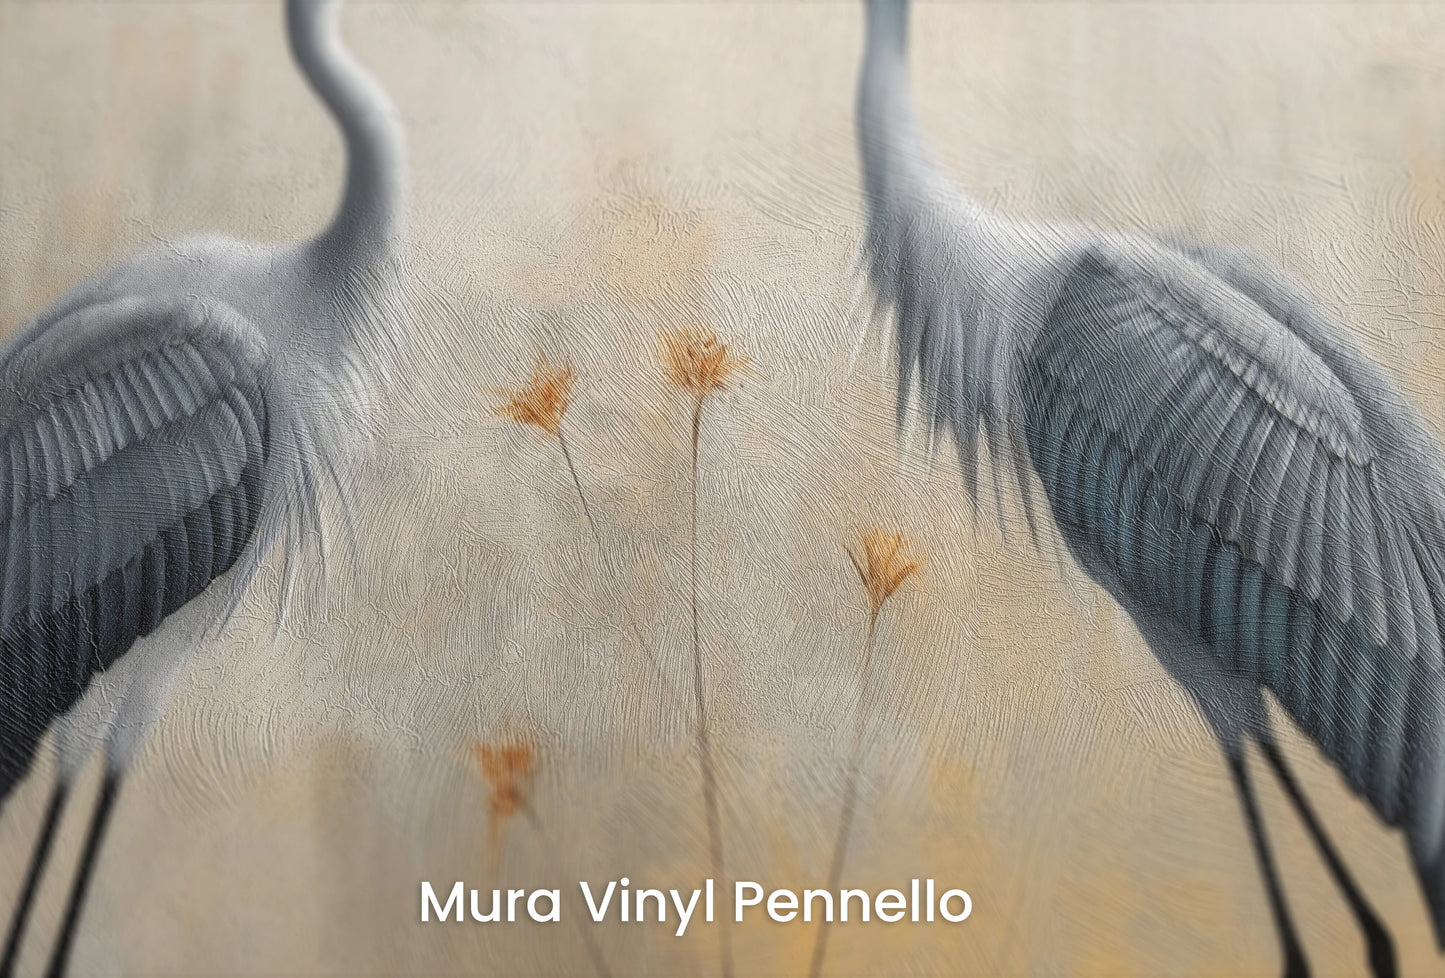 Zbliżenie na artystyczną fototapetę o nazwie Tranquil Unity na podłożu Mura Vinyl Pennello - faktura pociągnięć pędzla malarskiego.